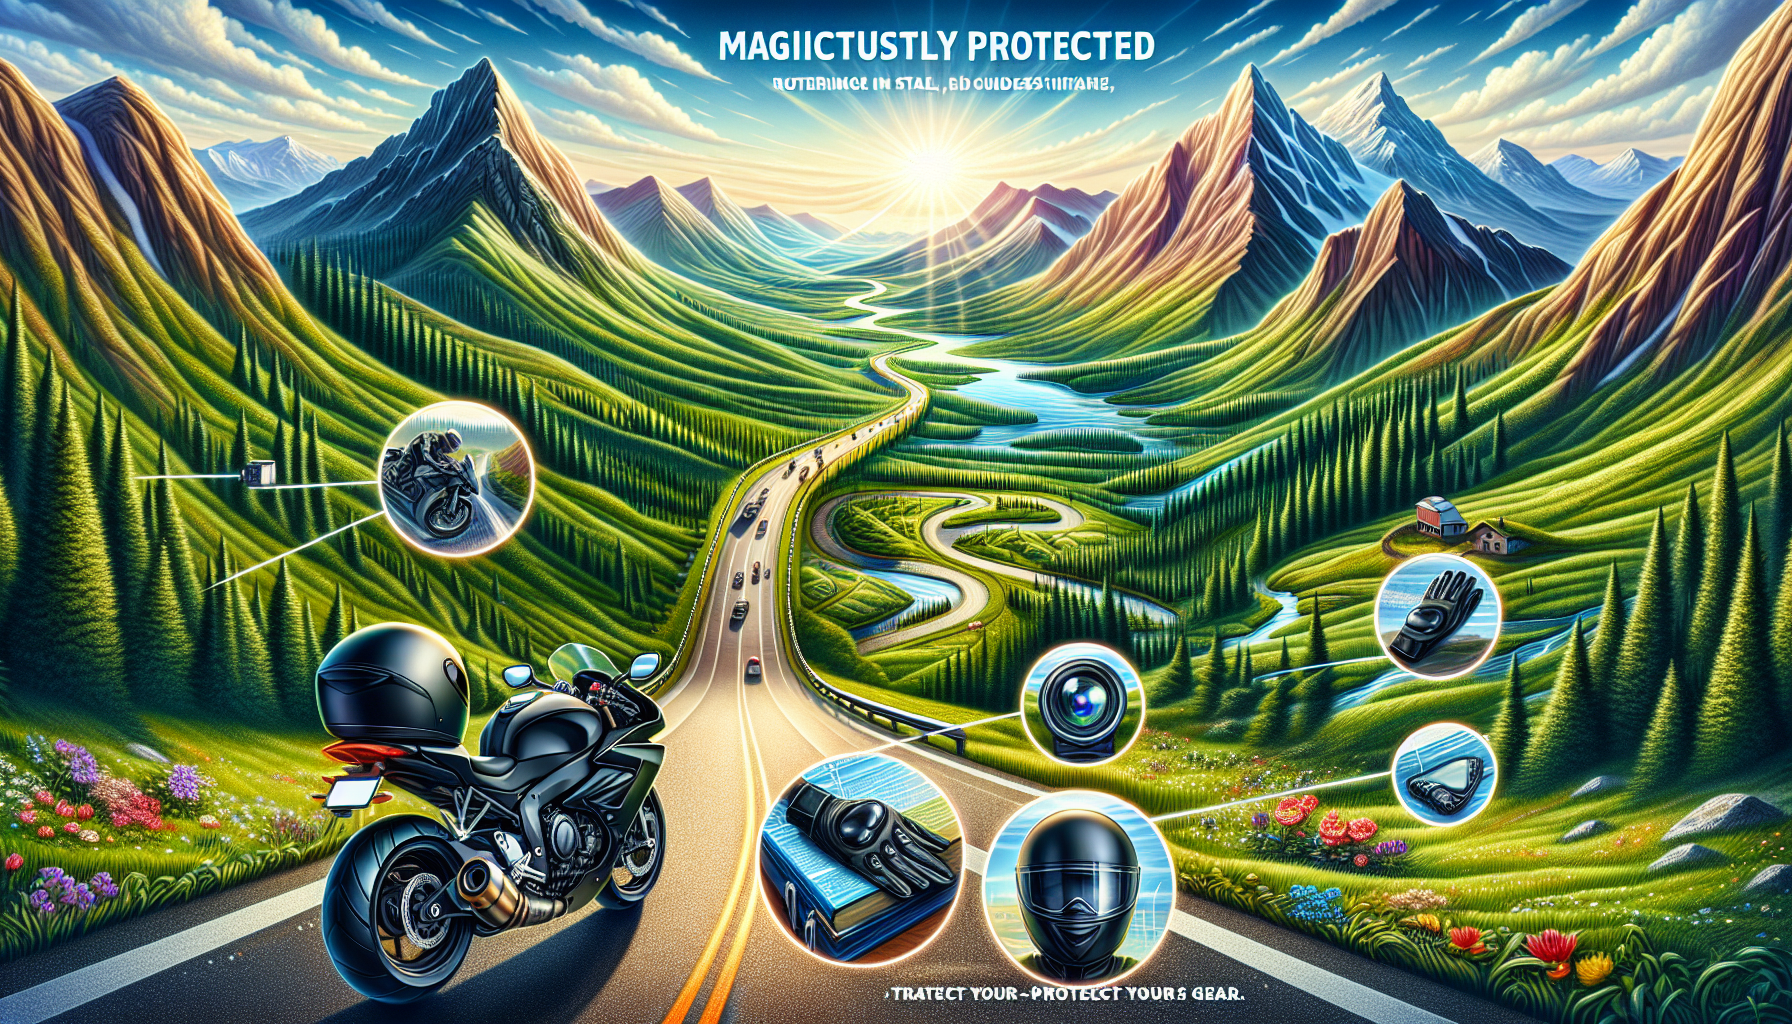 découvrez si l'assurance moto couvre vos accessoires avec notre guide complet et obtenez la protection dont vous avez besoin pour vos trajets en toute sérénité.